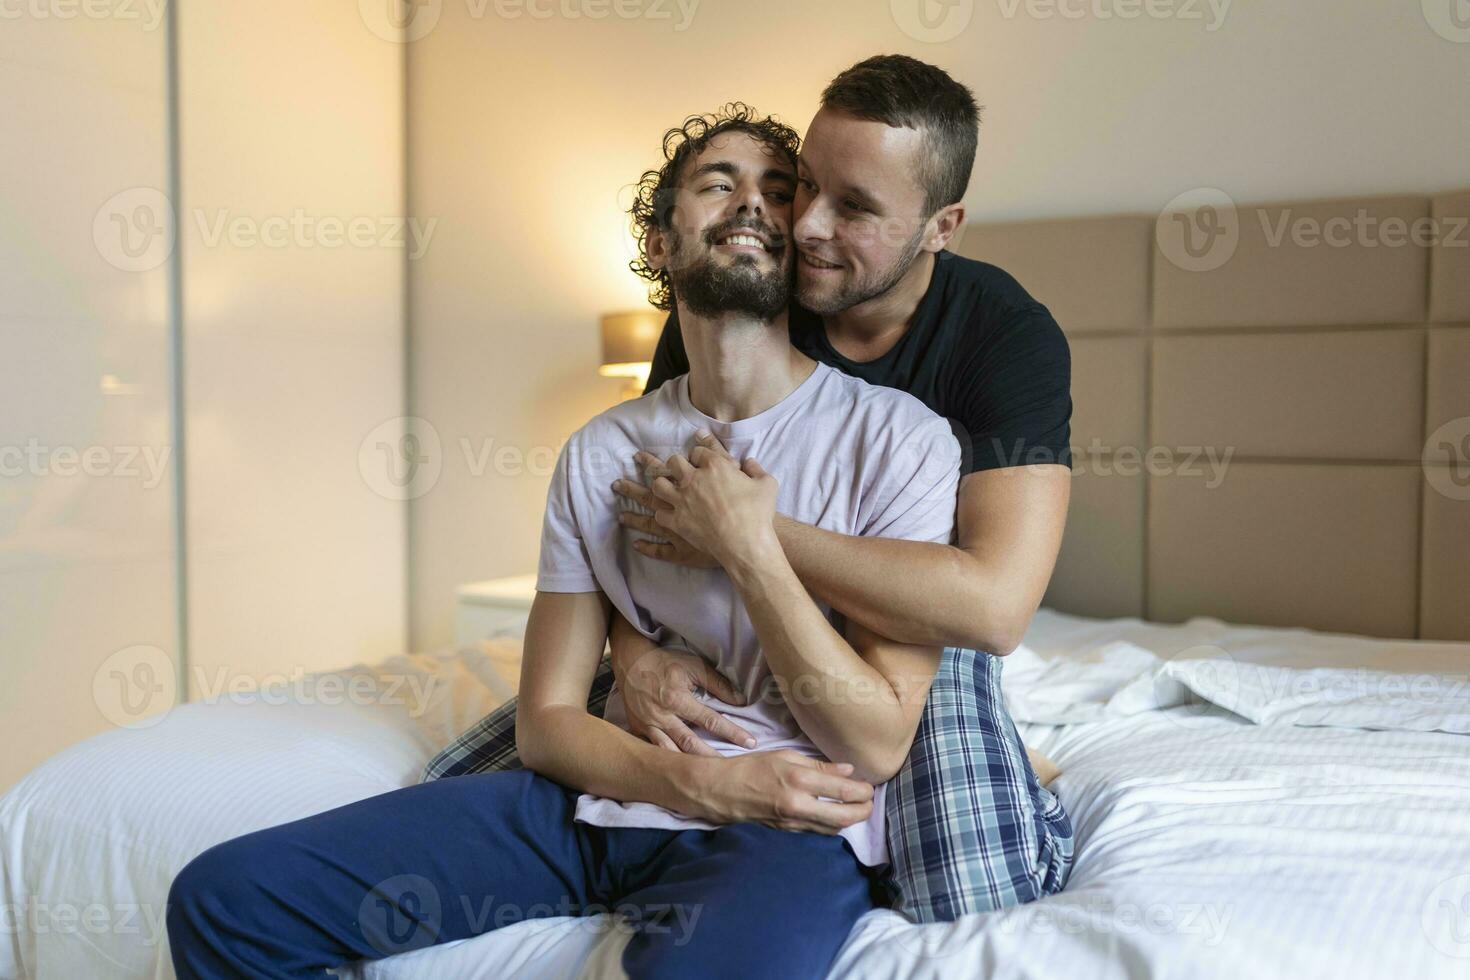 gay Pareja compartiendo un especial momento en el mañana, homosexual sensibilidad, gay Pareja amor hogar concepto foto